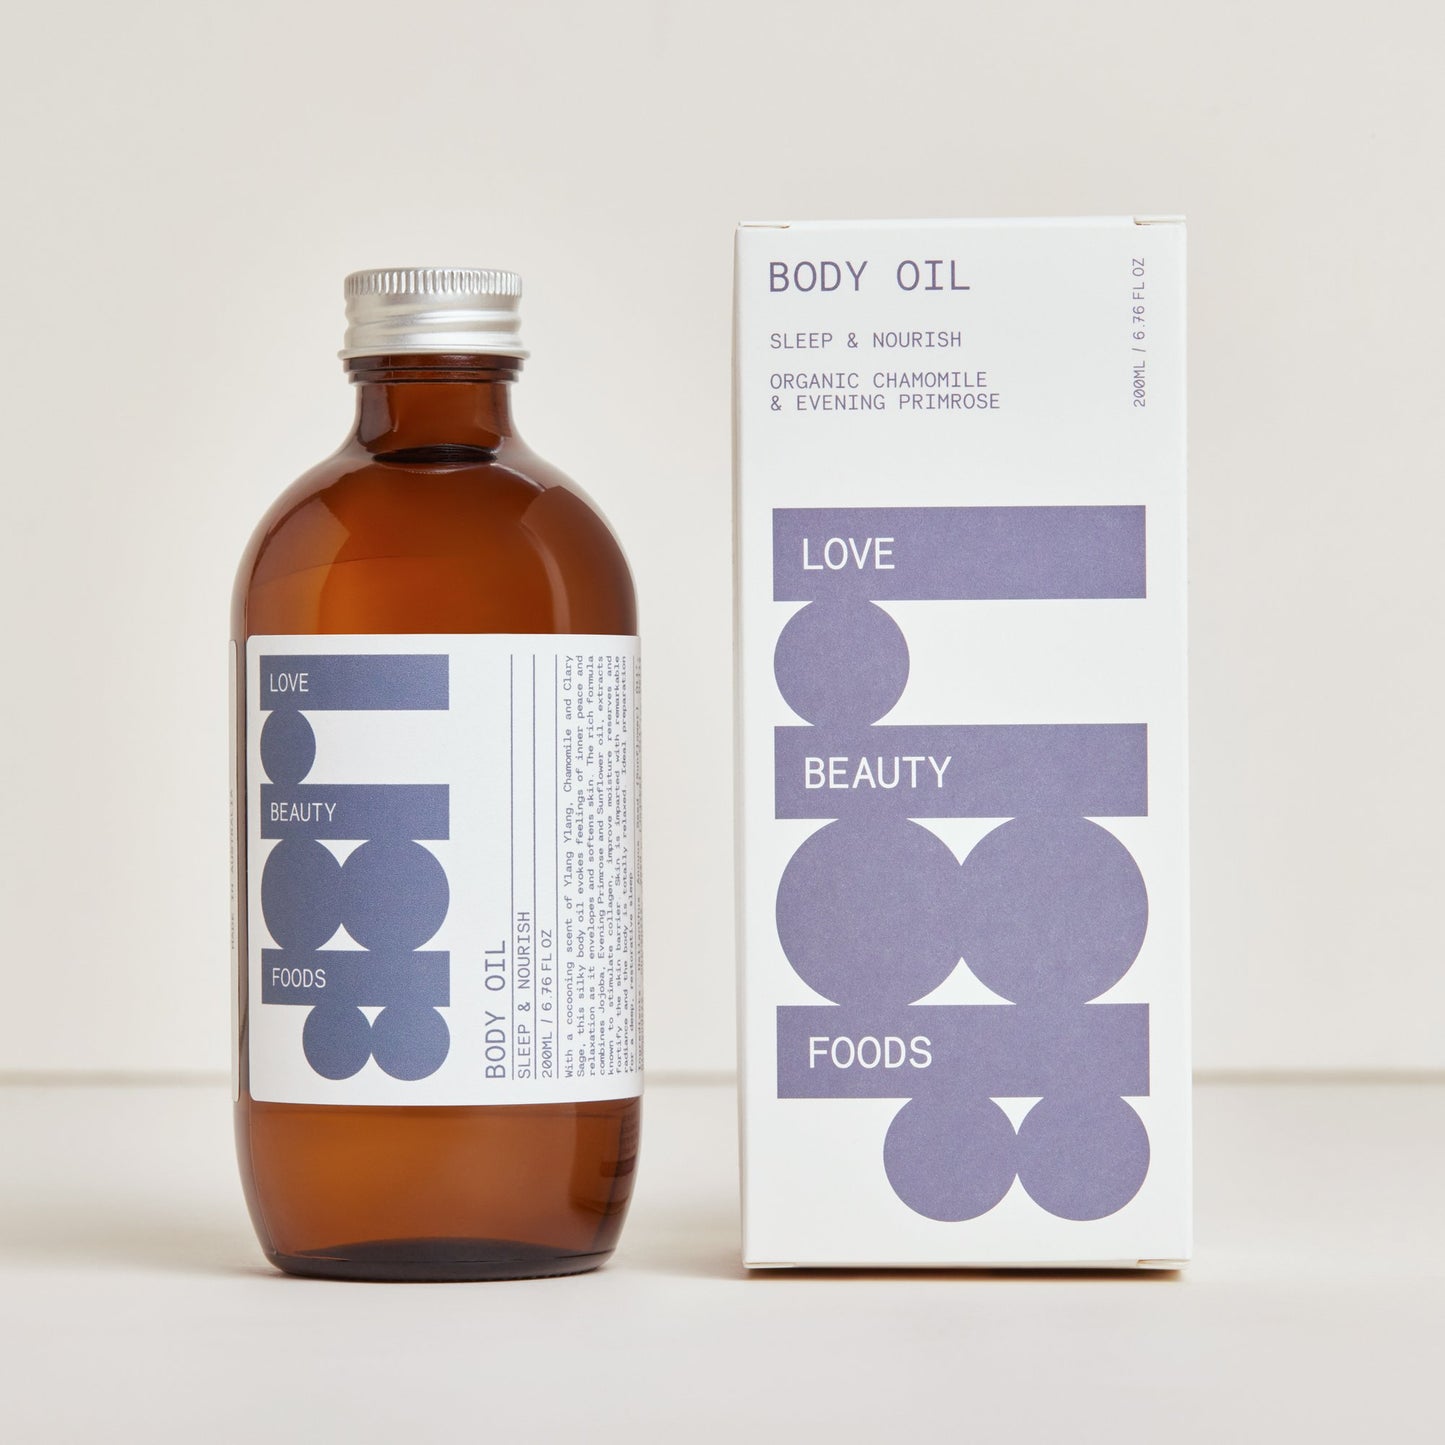 Sleep & Nourish Body Oil